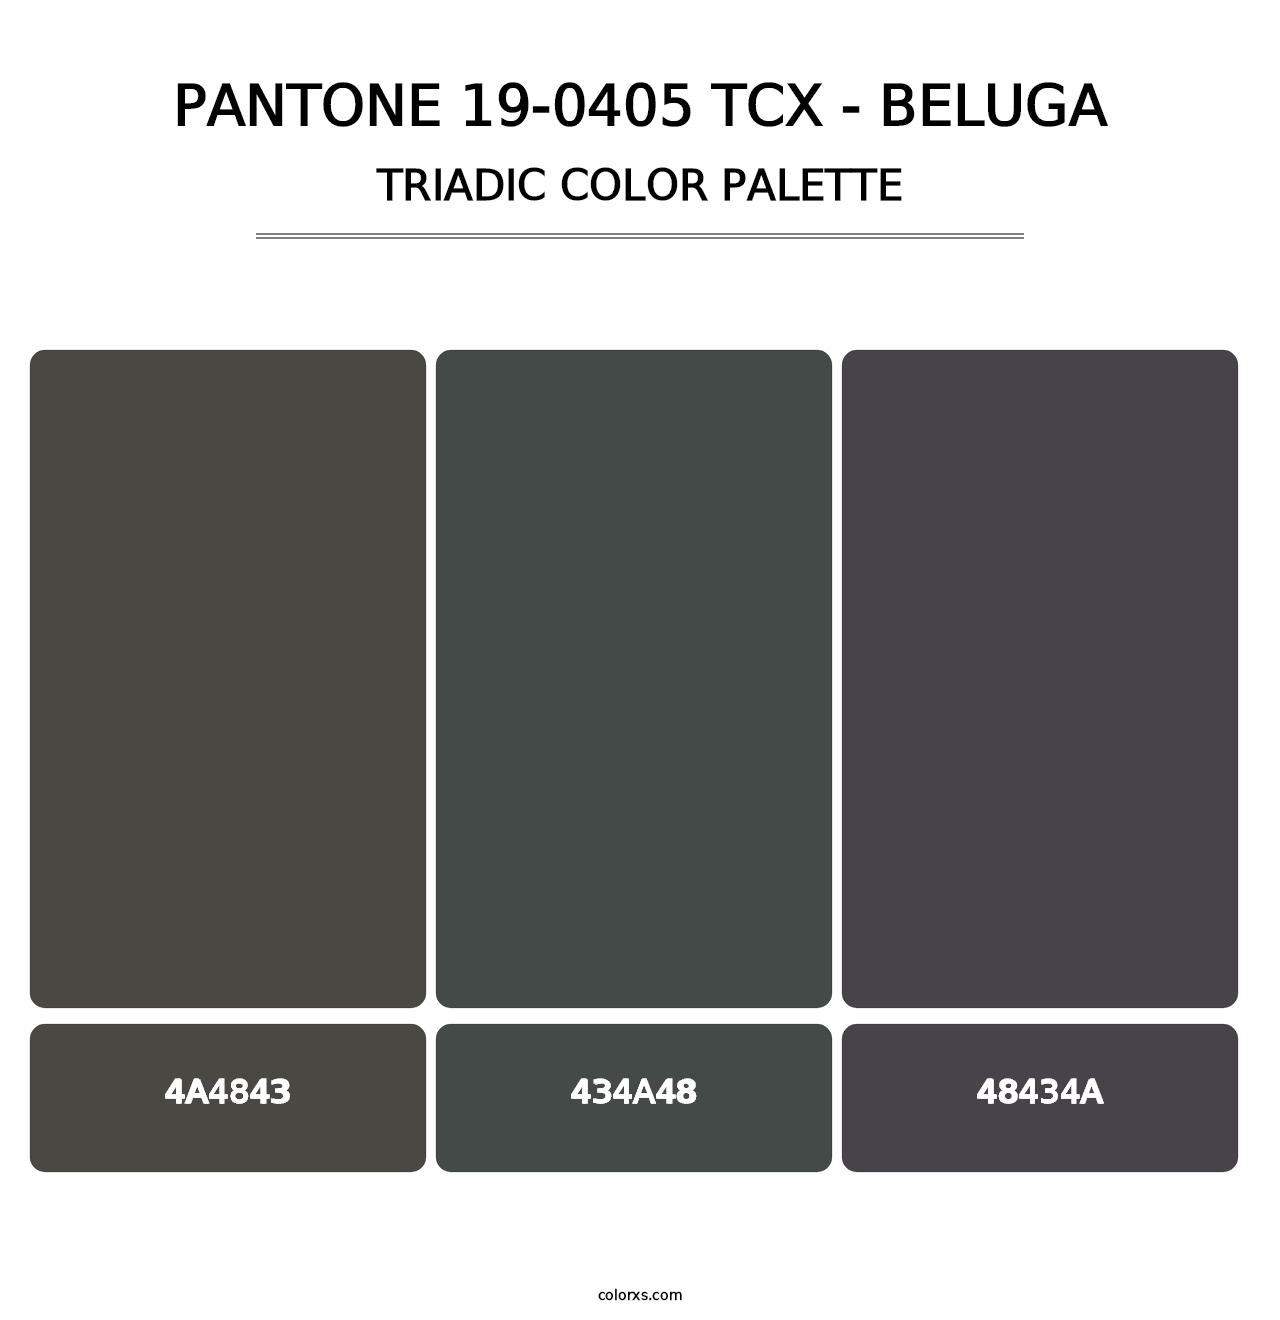 PANTONE 19-0405 TCX - Beluga - Triadic Color Palette